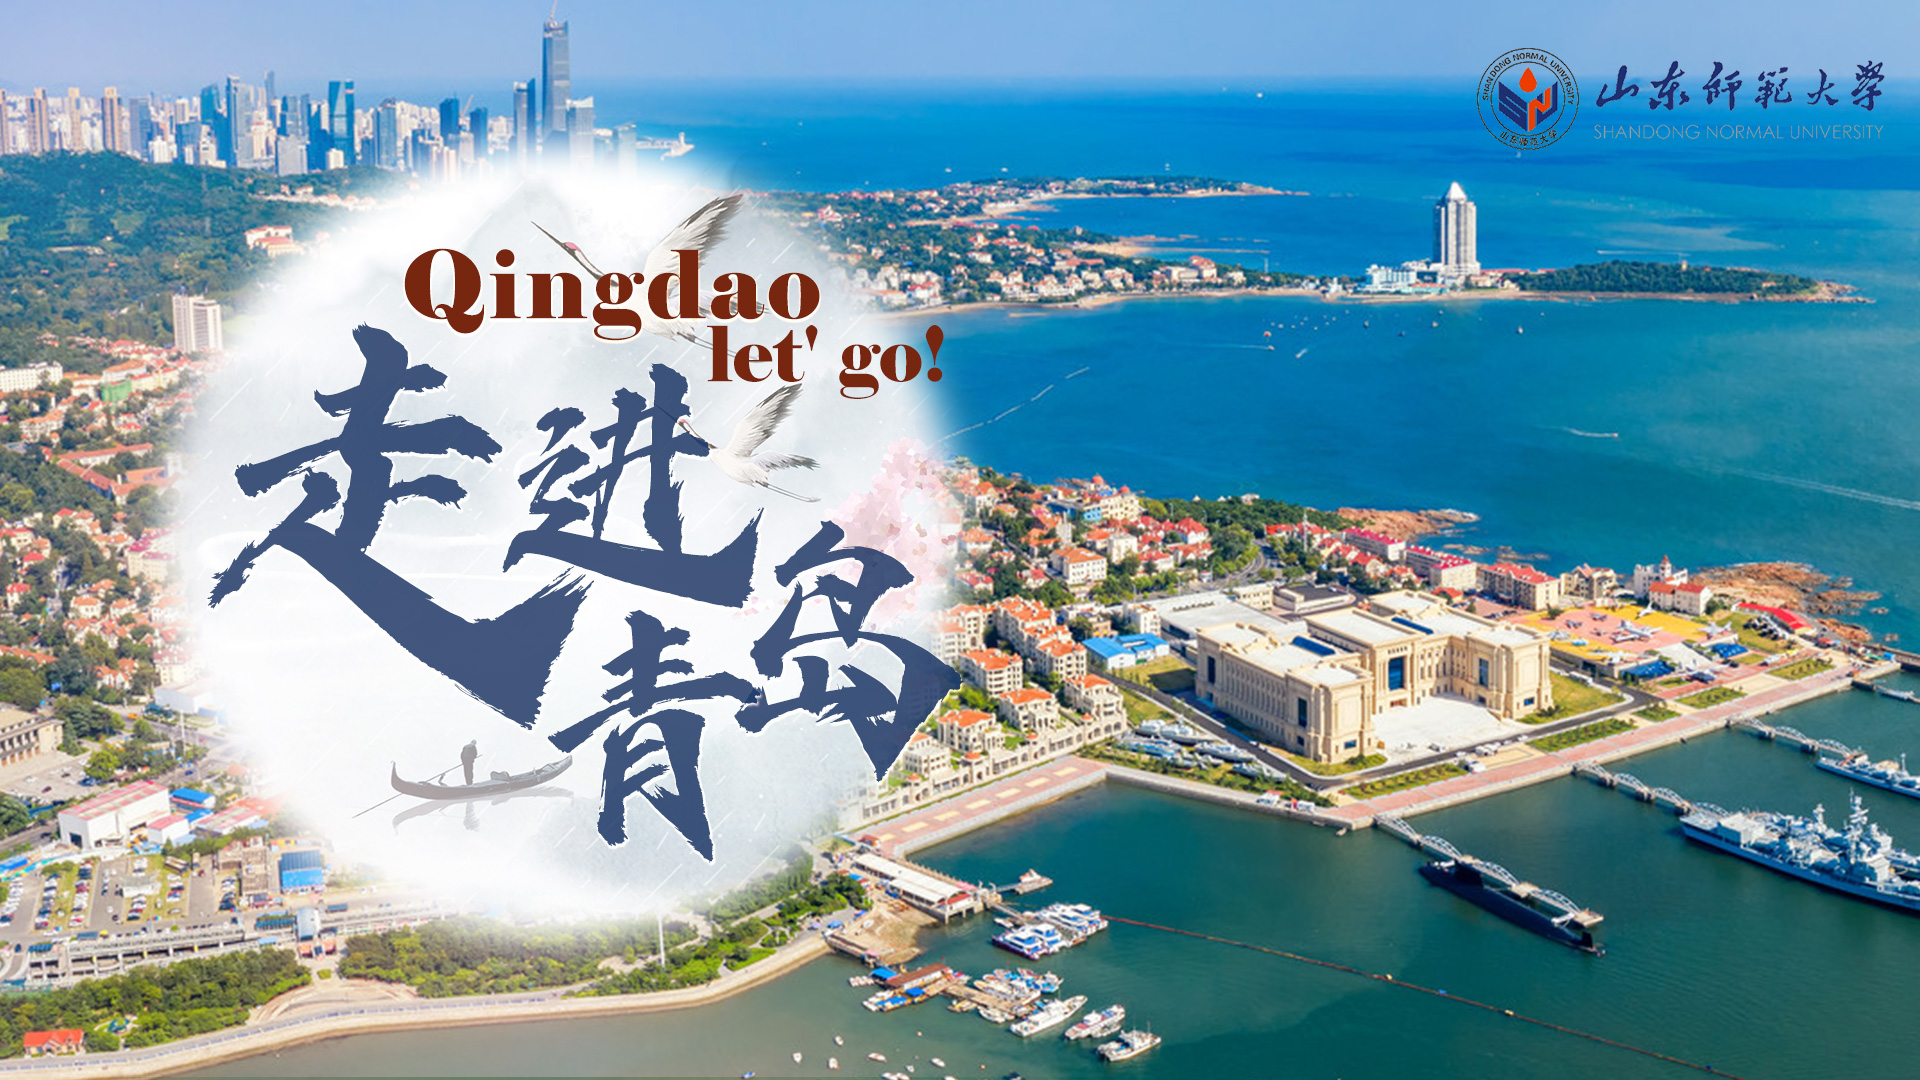 Qingdao, let’go!